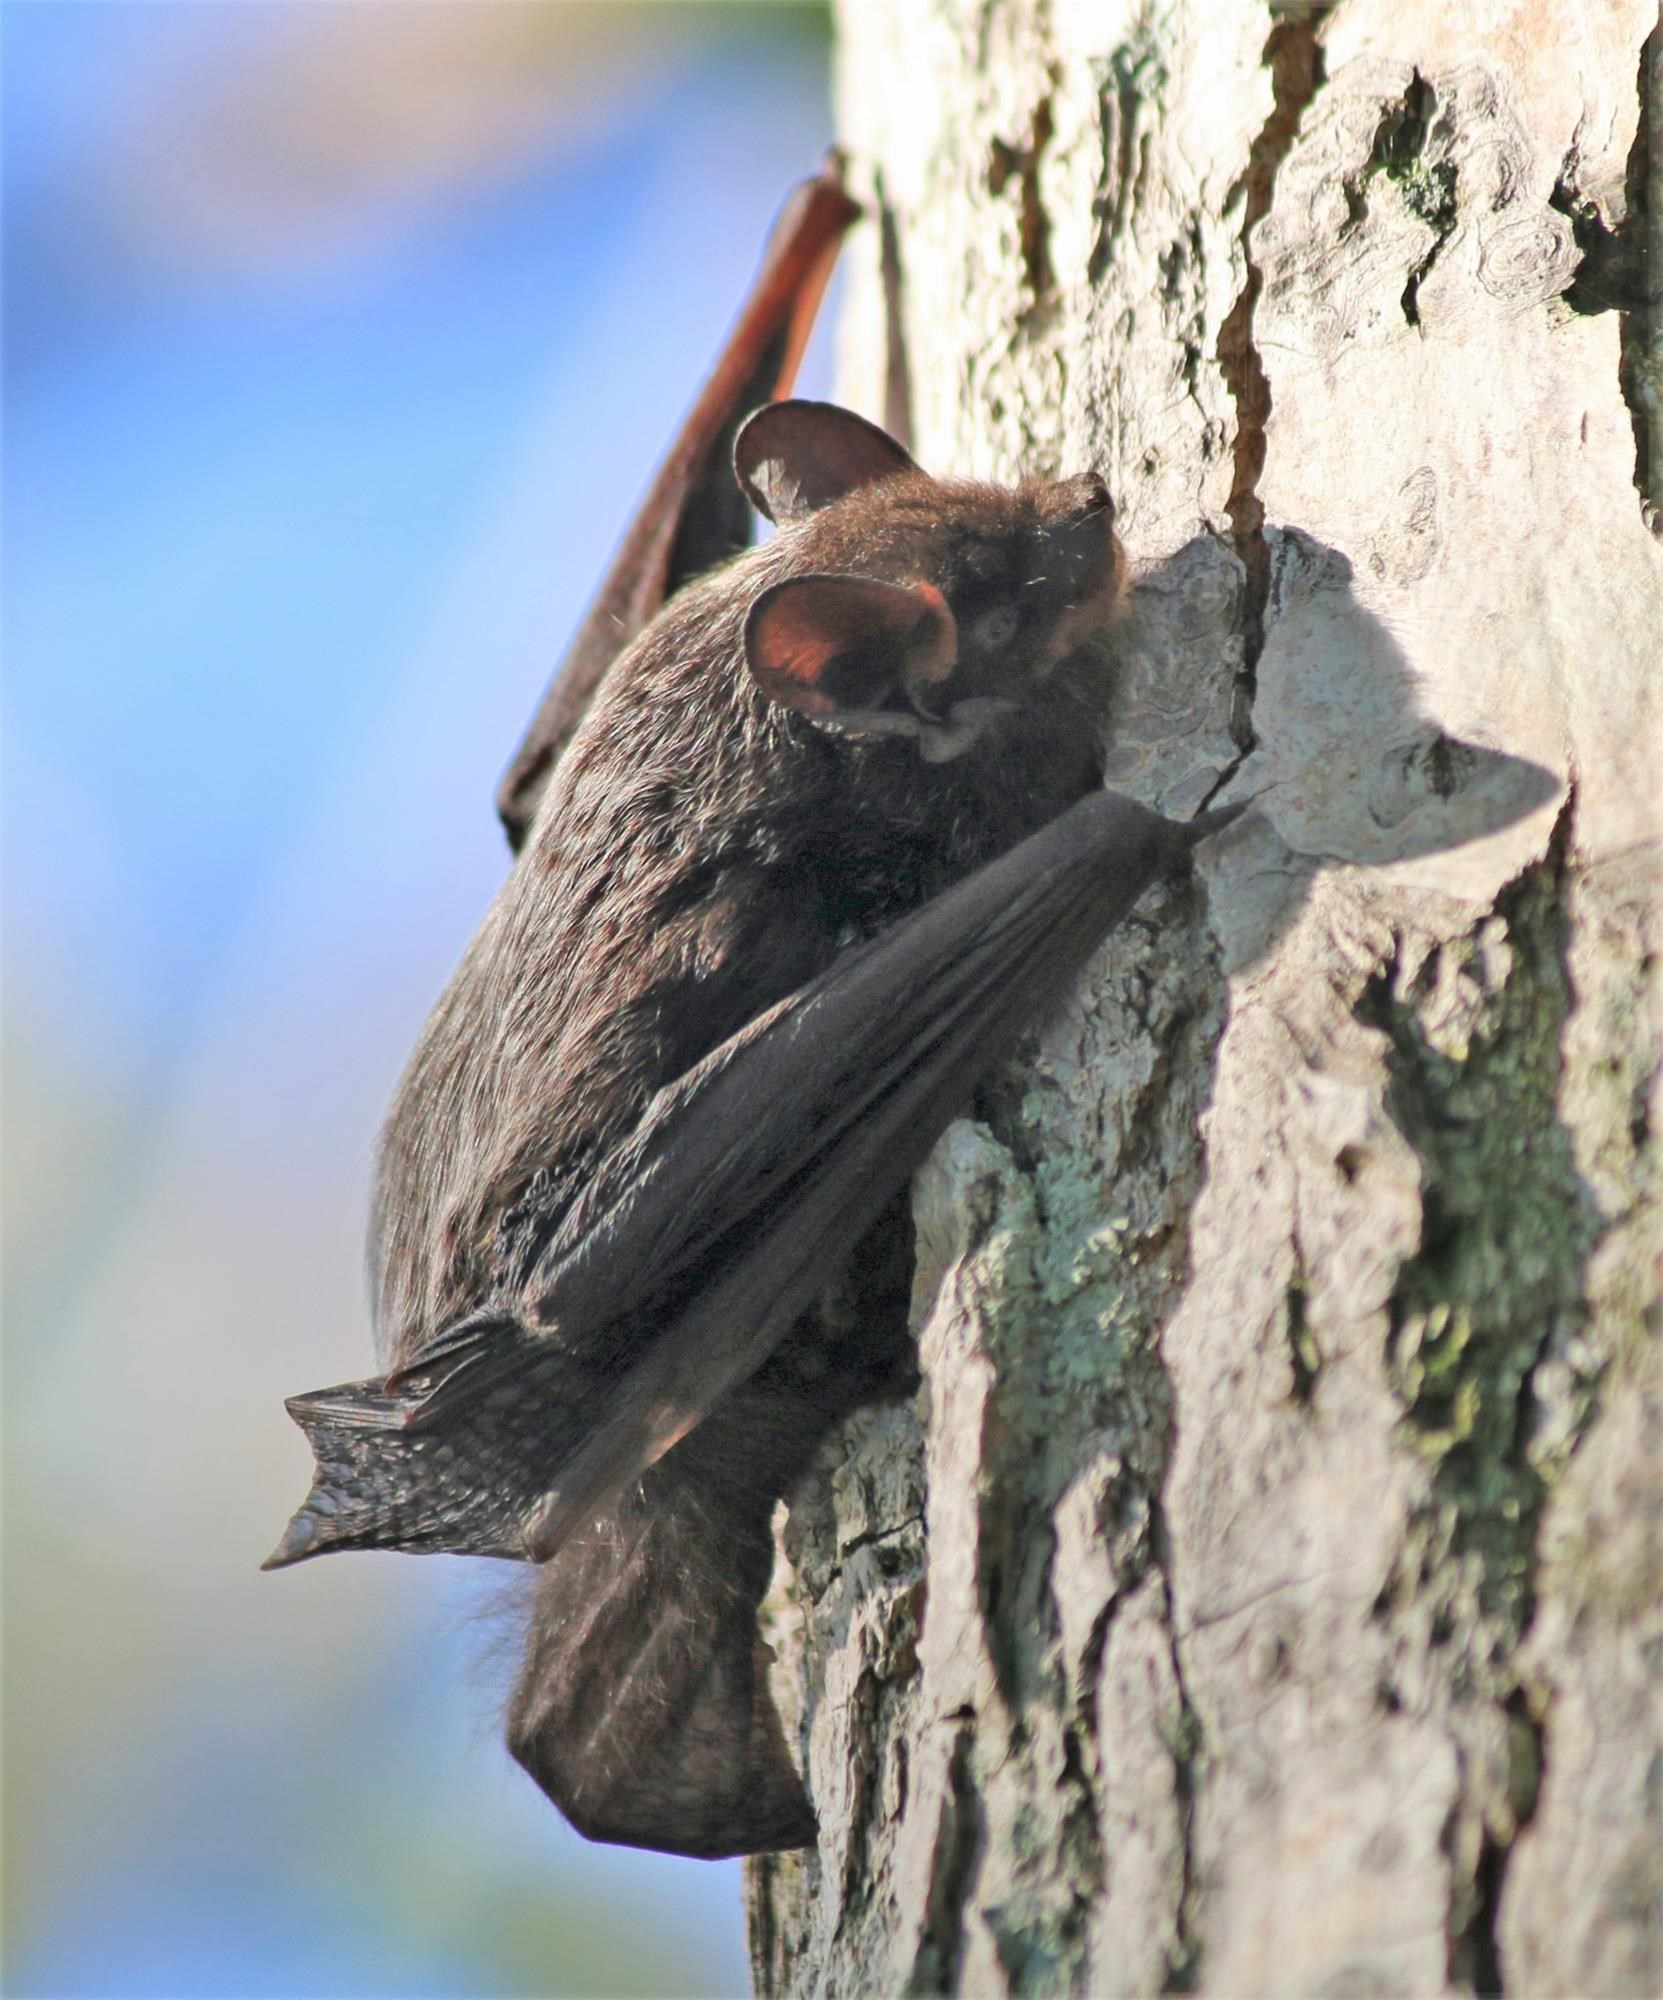 Habitats for Bats